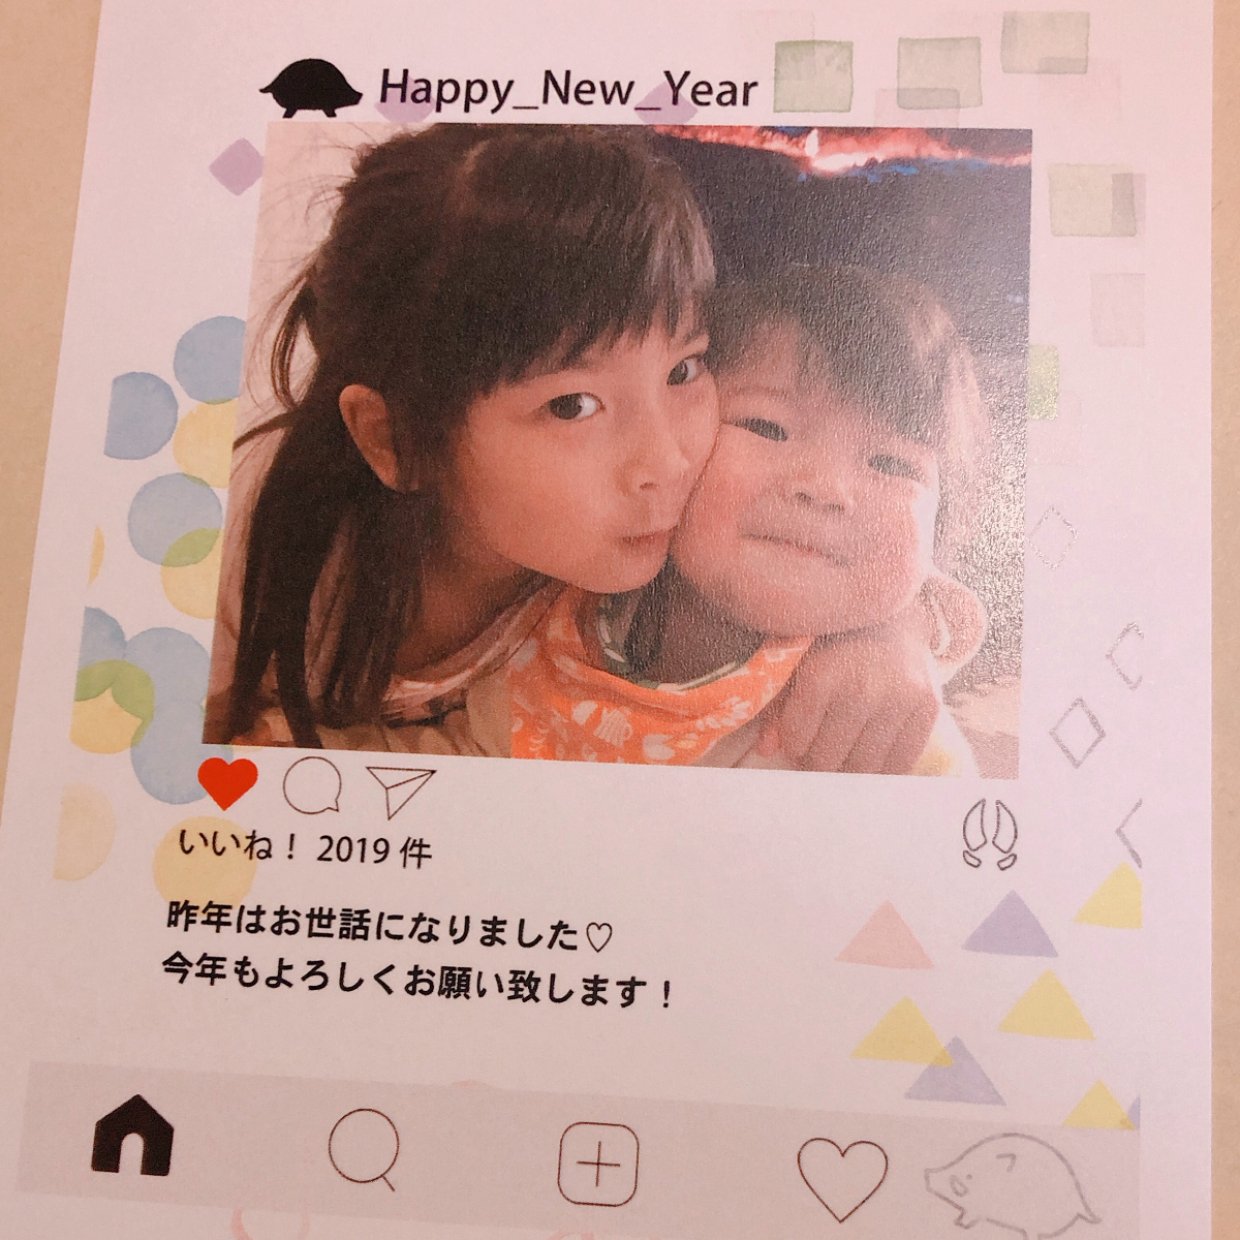  横山だいすけさんがCM出演！「しまうま年賀状2019」アプリで年賀状を作ってみた 